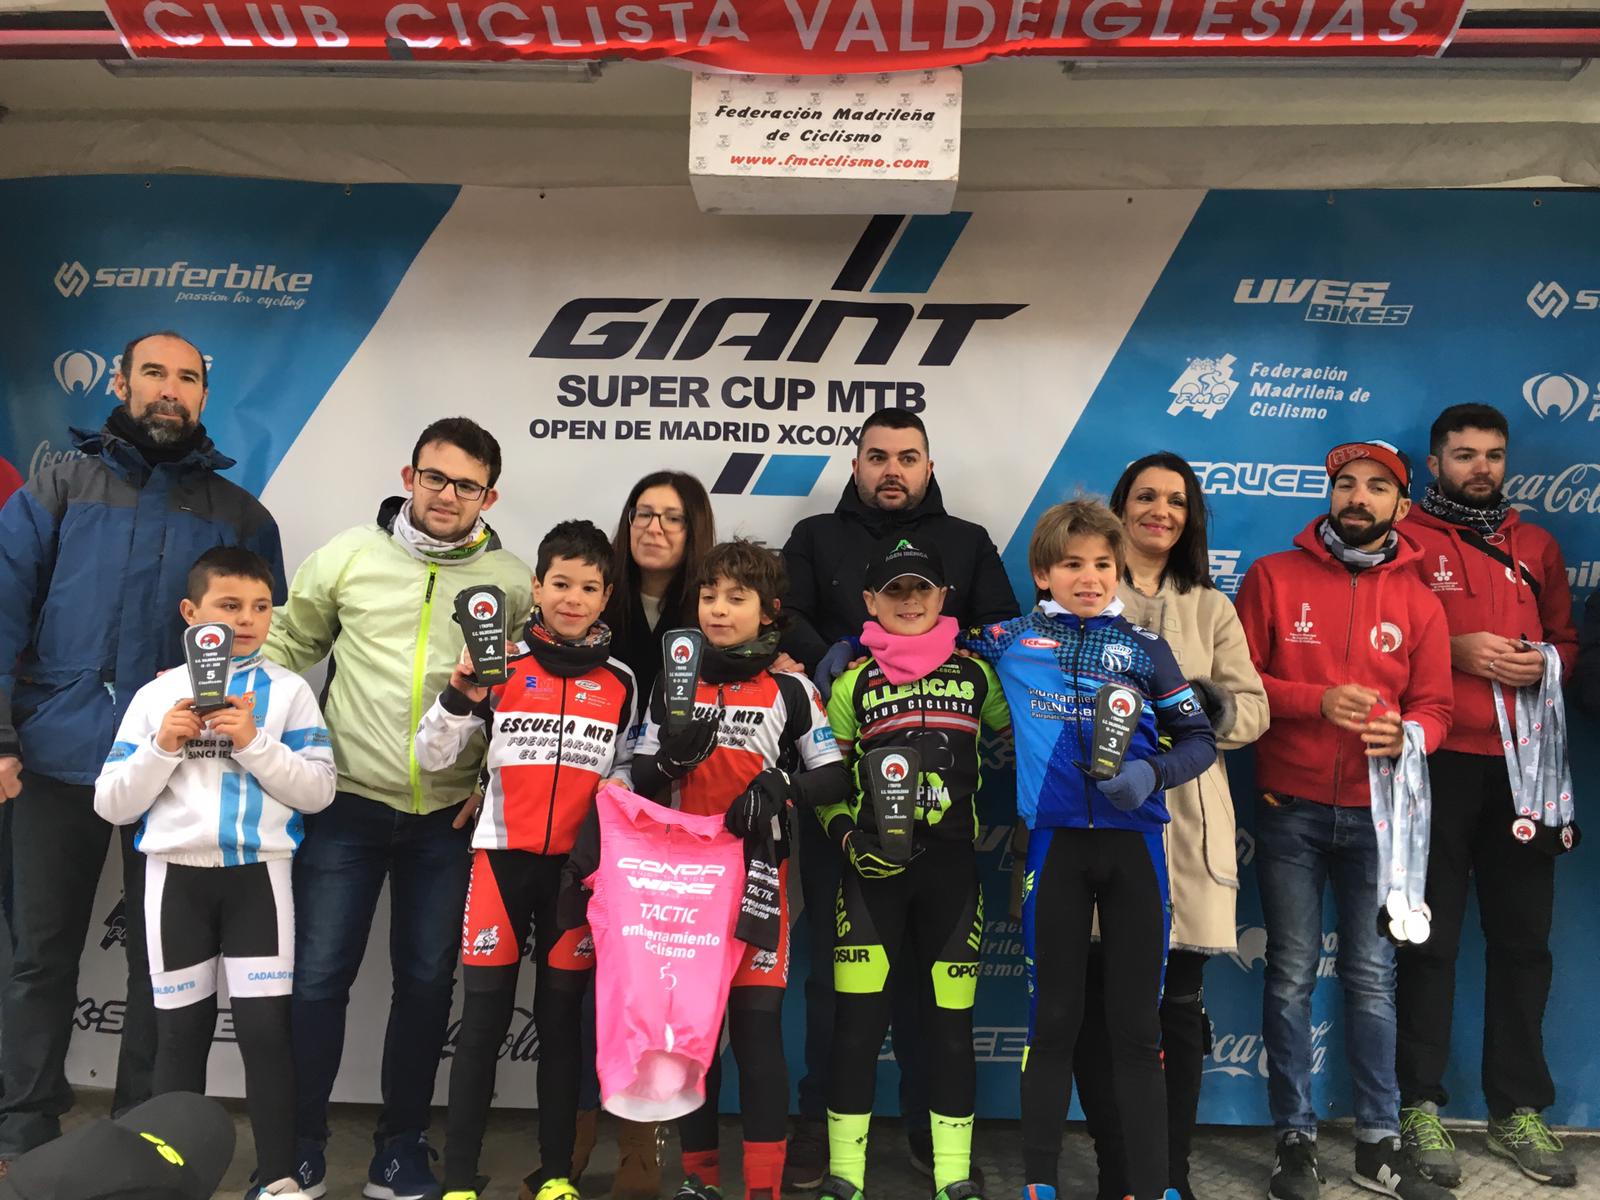 Arrancó la Super Cup Kids en San Martin de Valdeiglesias con una excelente participación